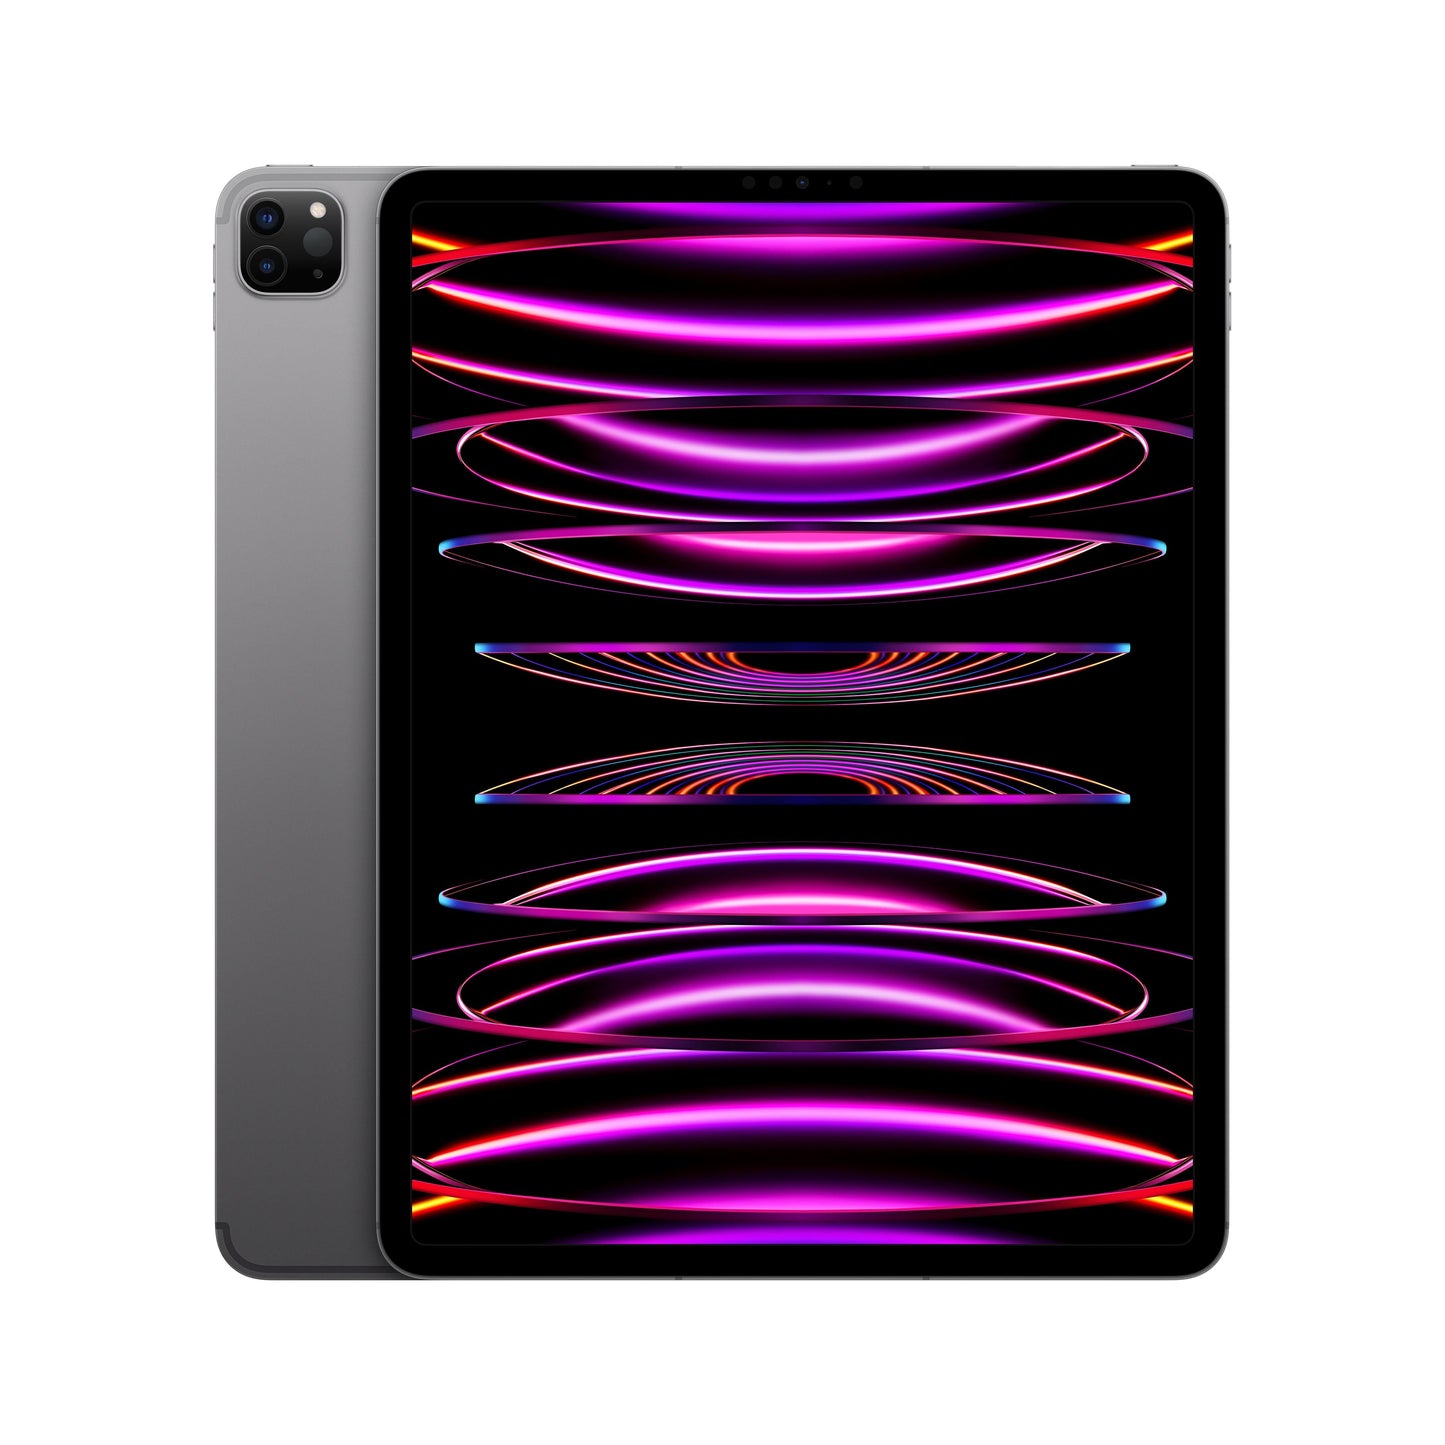 2022 12.9-inch iPad Pro Wi-Fi + Cellular 256GB - Space Grey (6th generation)